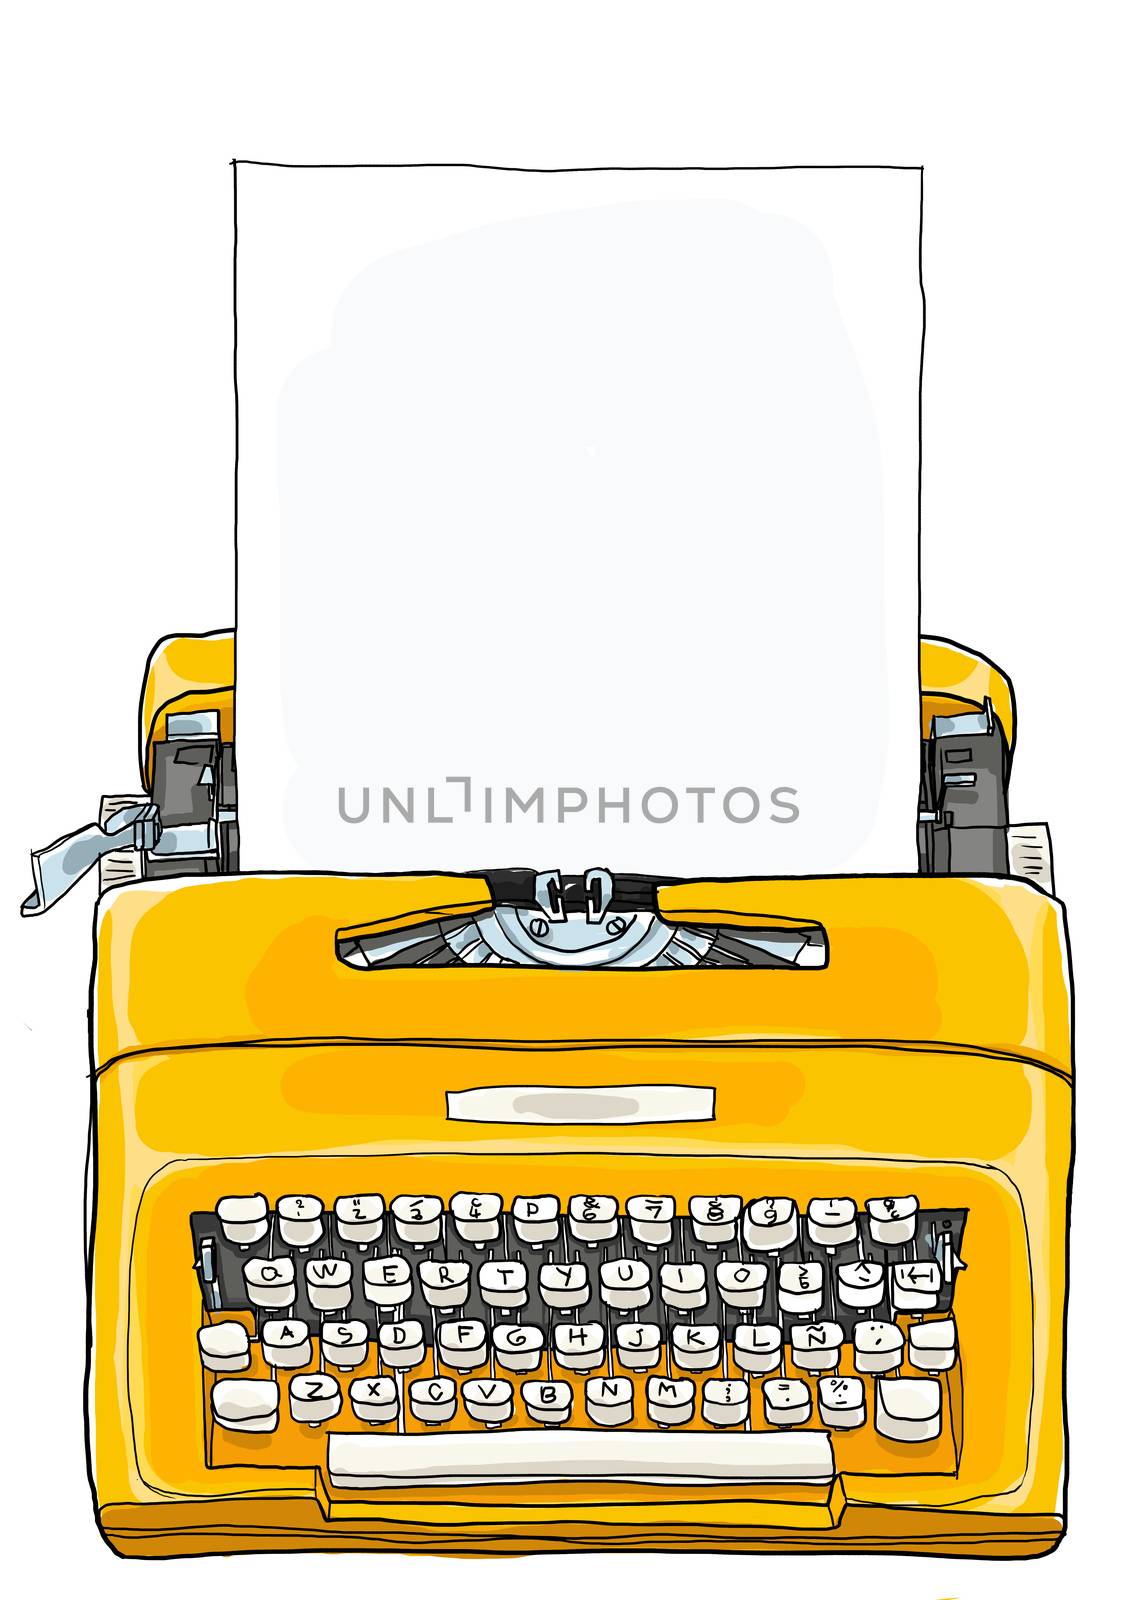 Yellow Typewriter  Vintage Portable Manual typewriter  with blan by paidaen